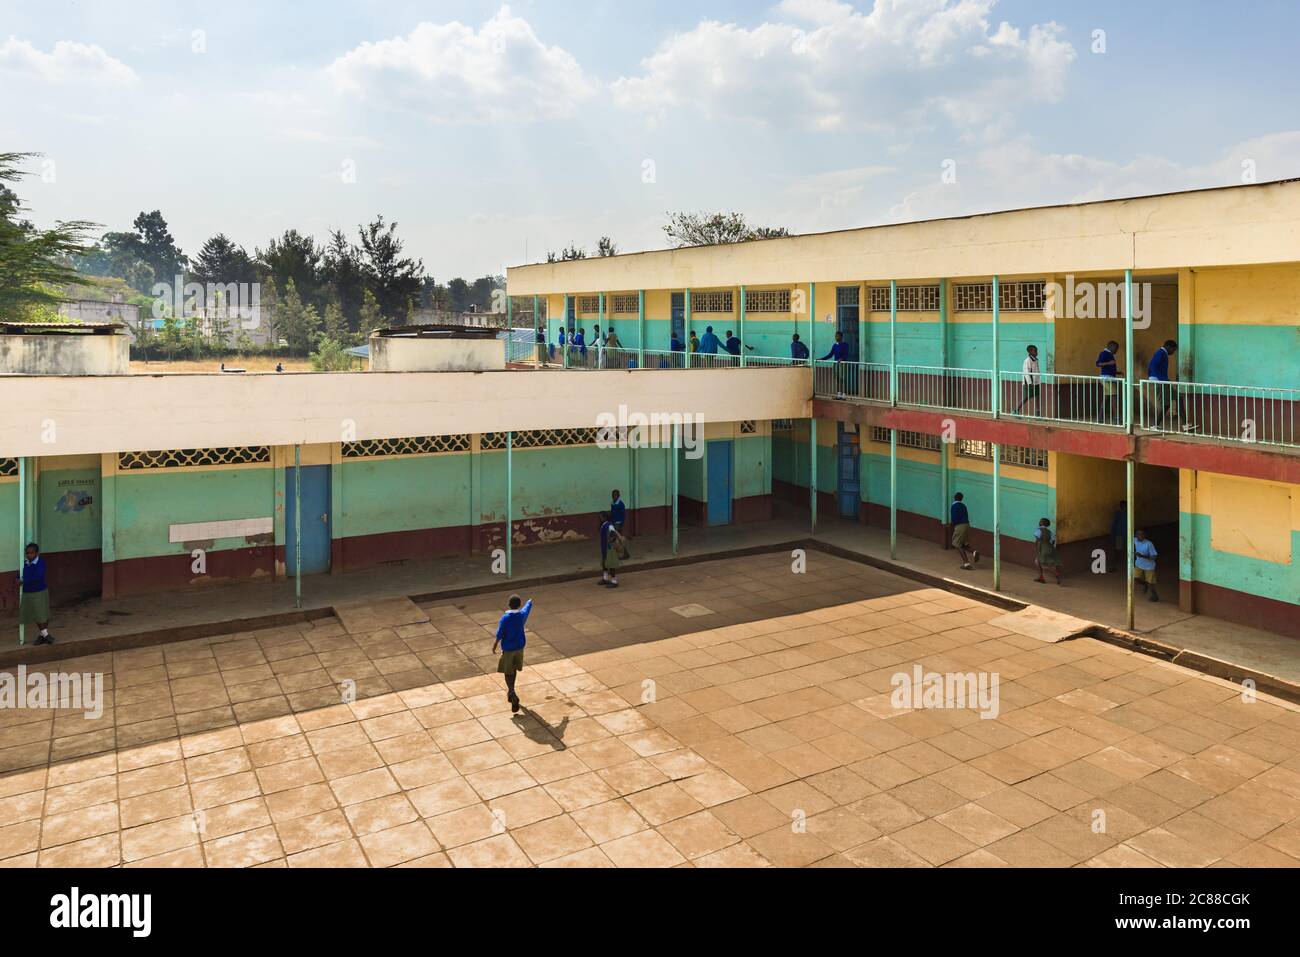 Vista exterior de la escuela secundaria con patio y niños en uniforme caminando a la clase, Nairobi, Kenya Foto de stock